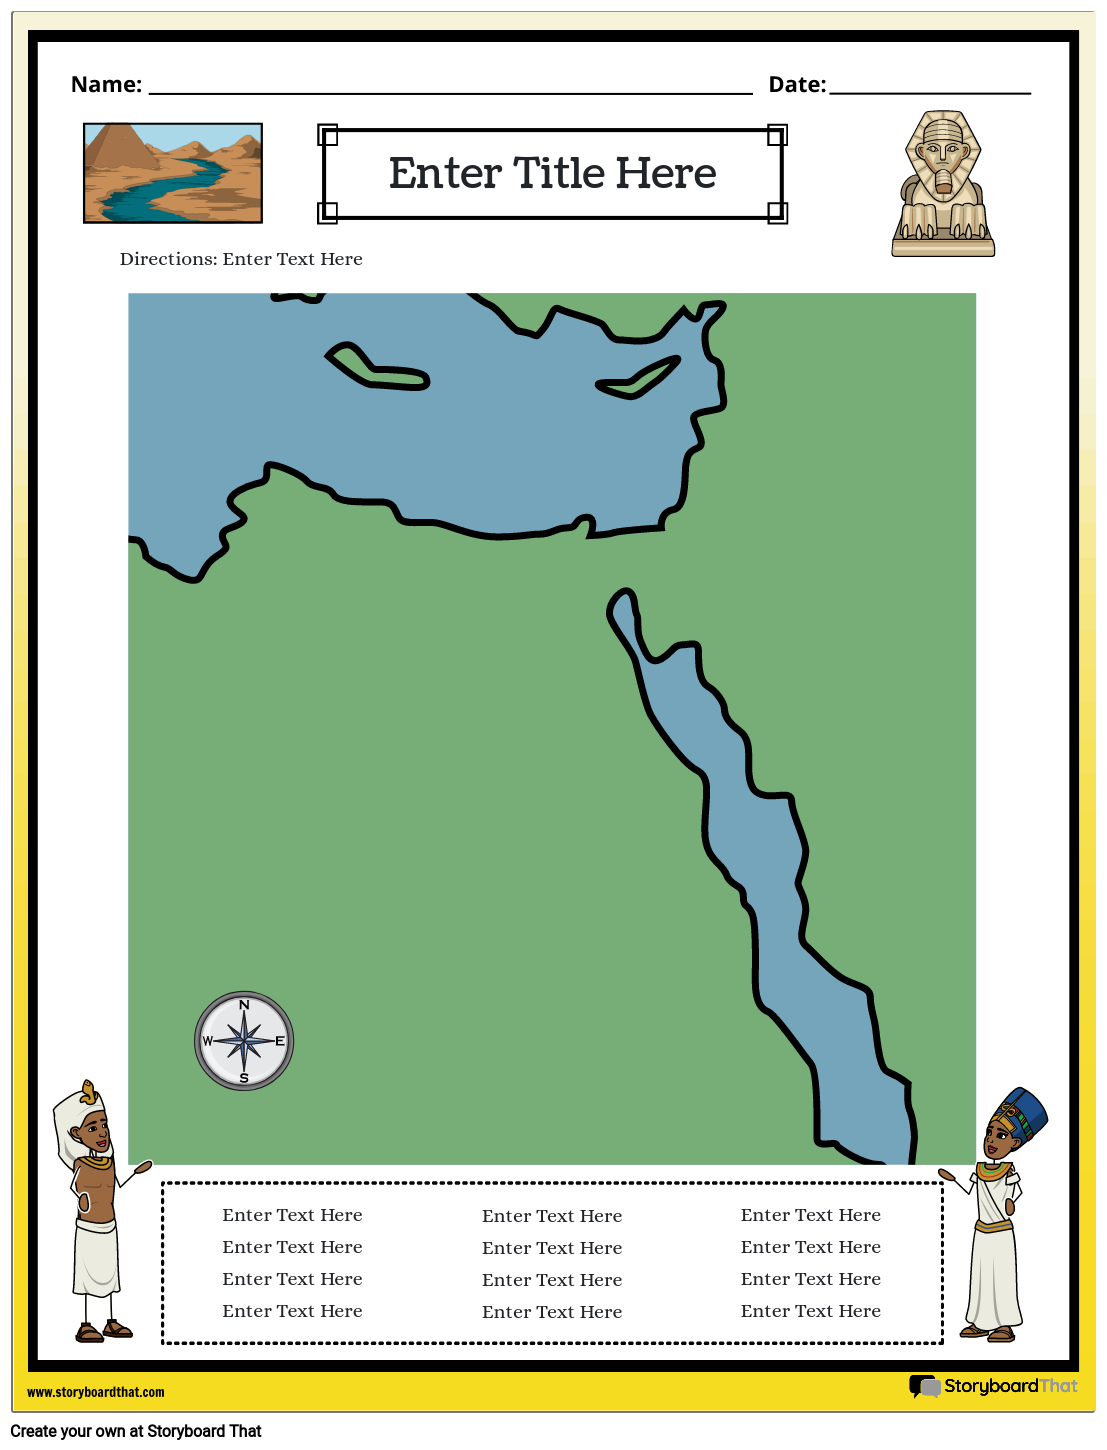 प्राचीन मिस्र का नक्शा